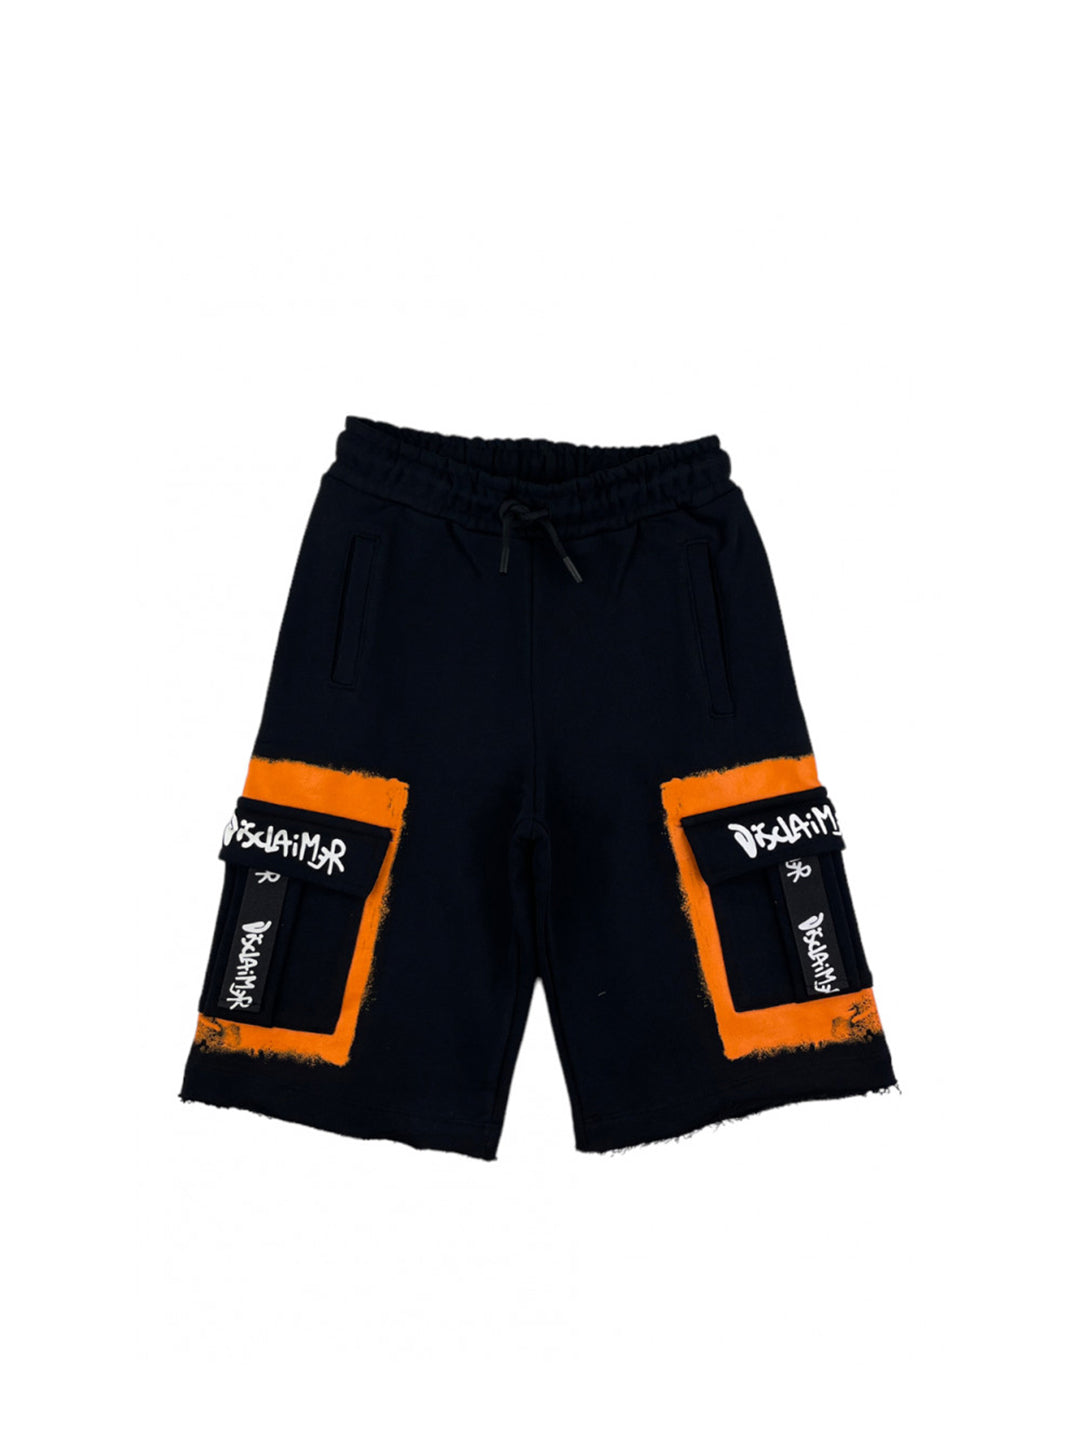 Disclaimer kids shorts nero e arancione con tasconi laterali